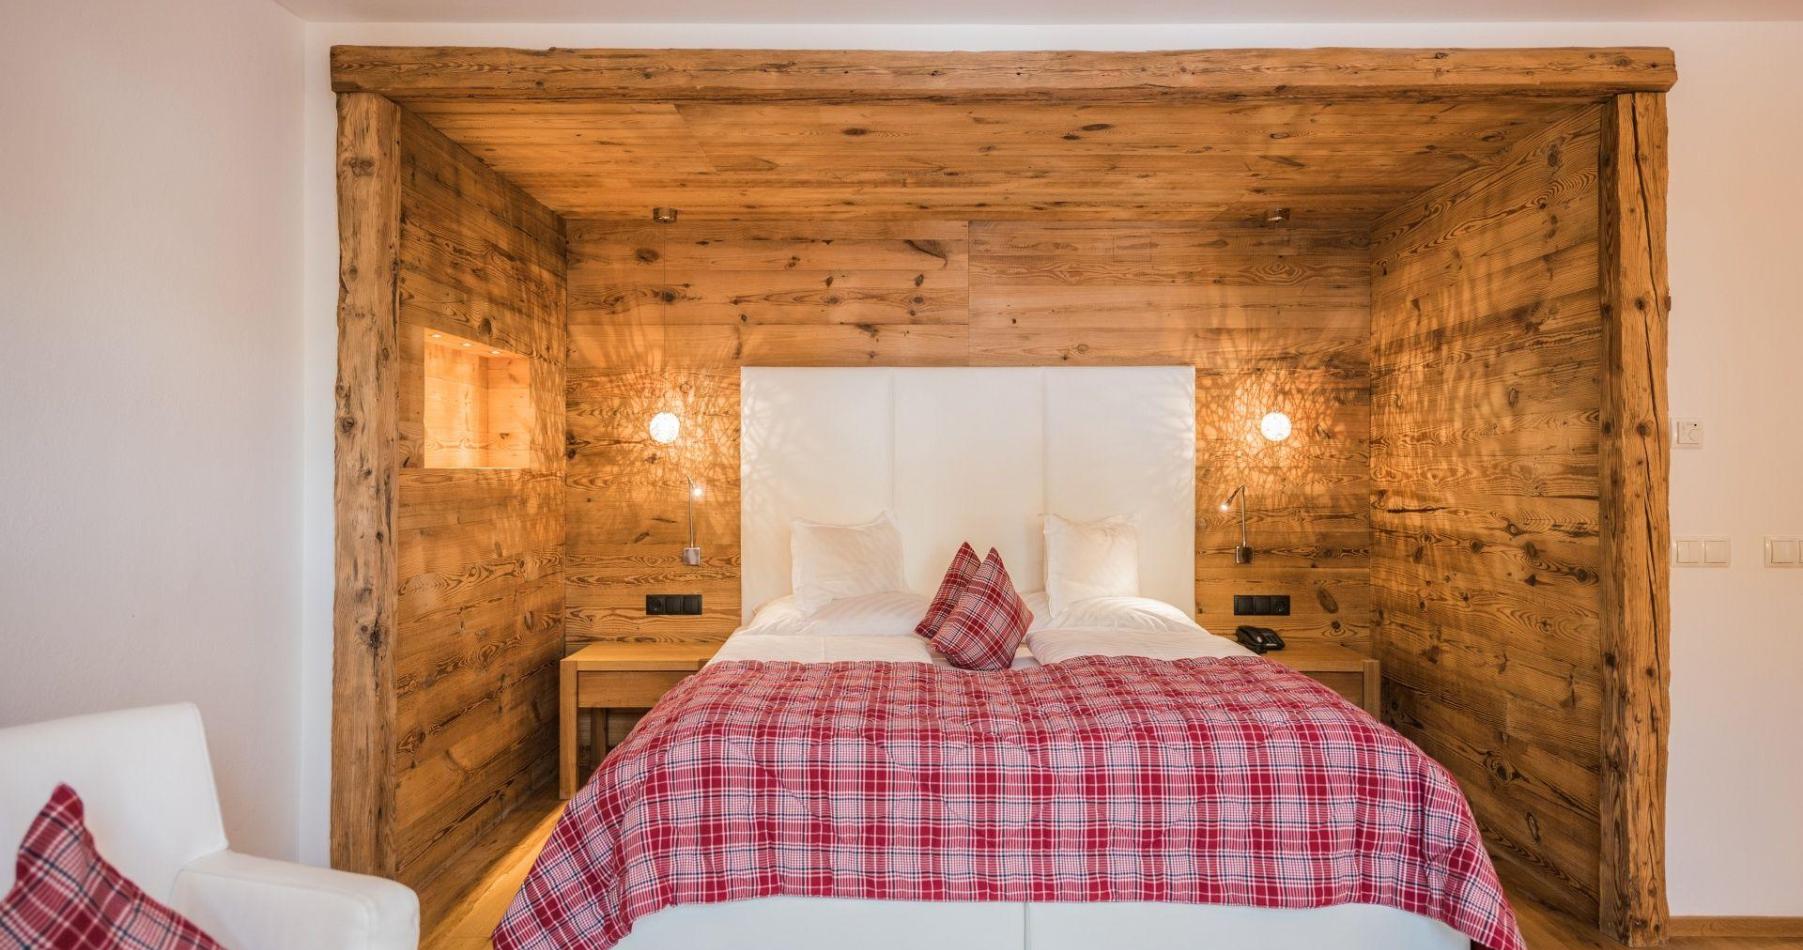 Zimmer Alpe 109 mit Doppelbett